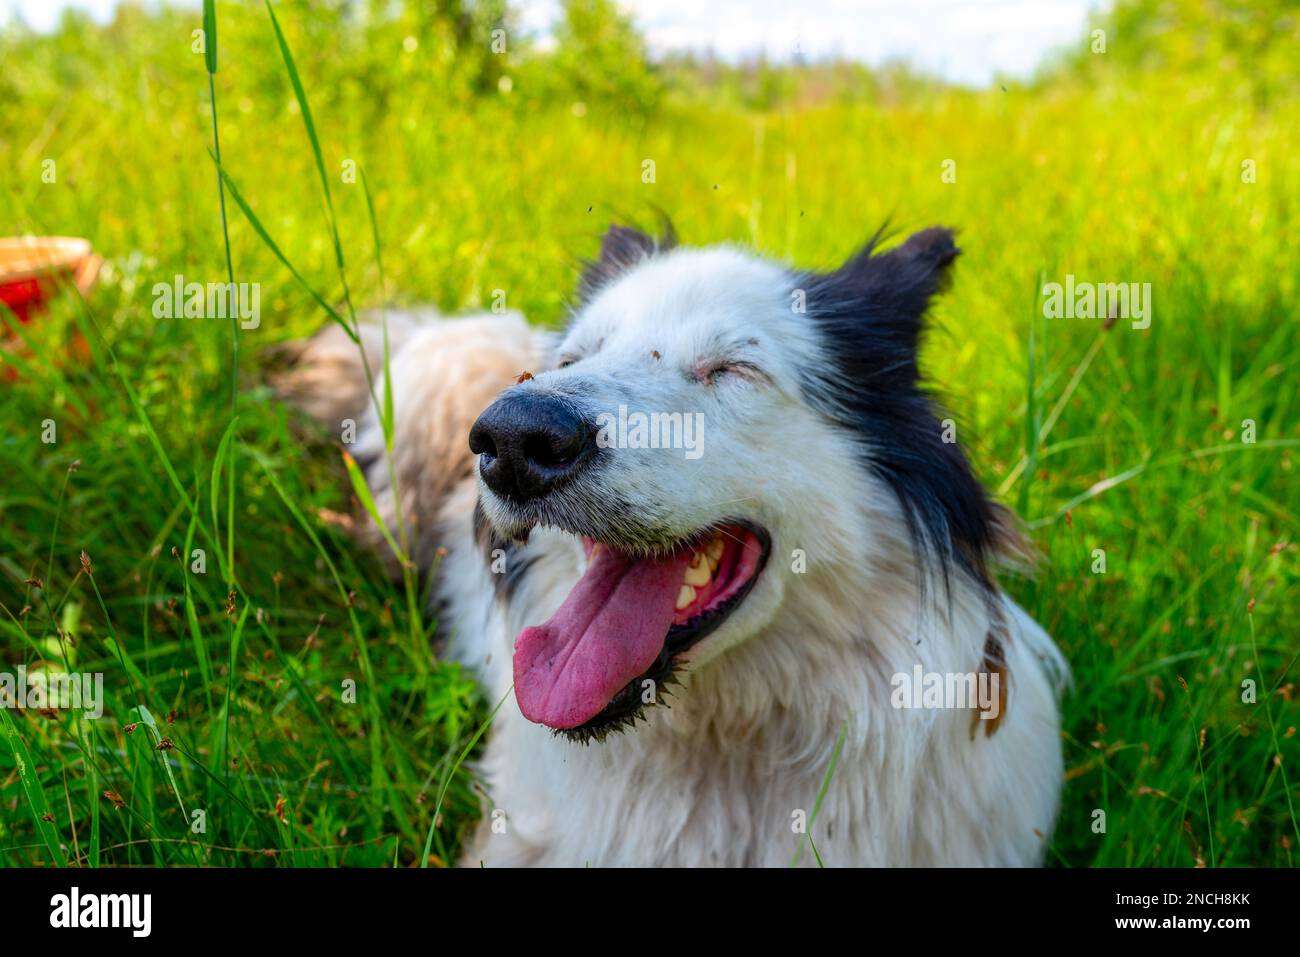 Der weiße Hund liegt auf dem grünen Gras im Wald mit offenem Mund und seiner Zunge, die tagsüber fröhlich lächelt. Stockfoto